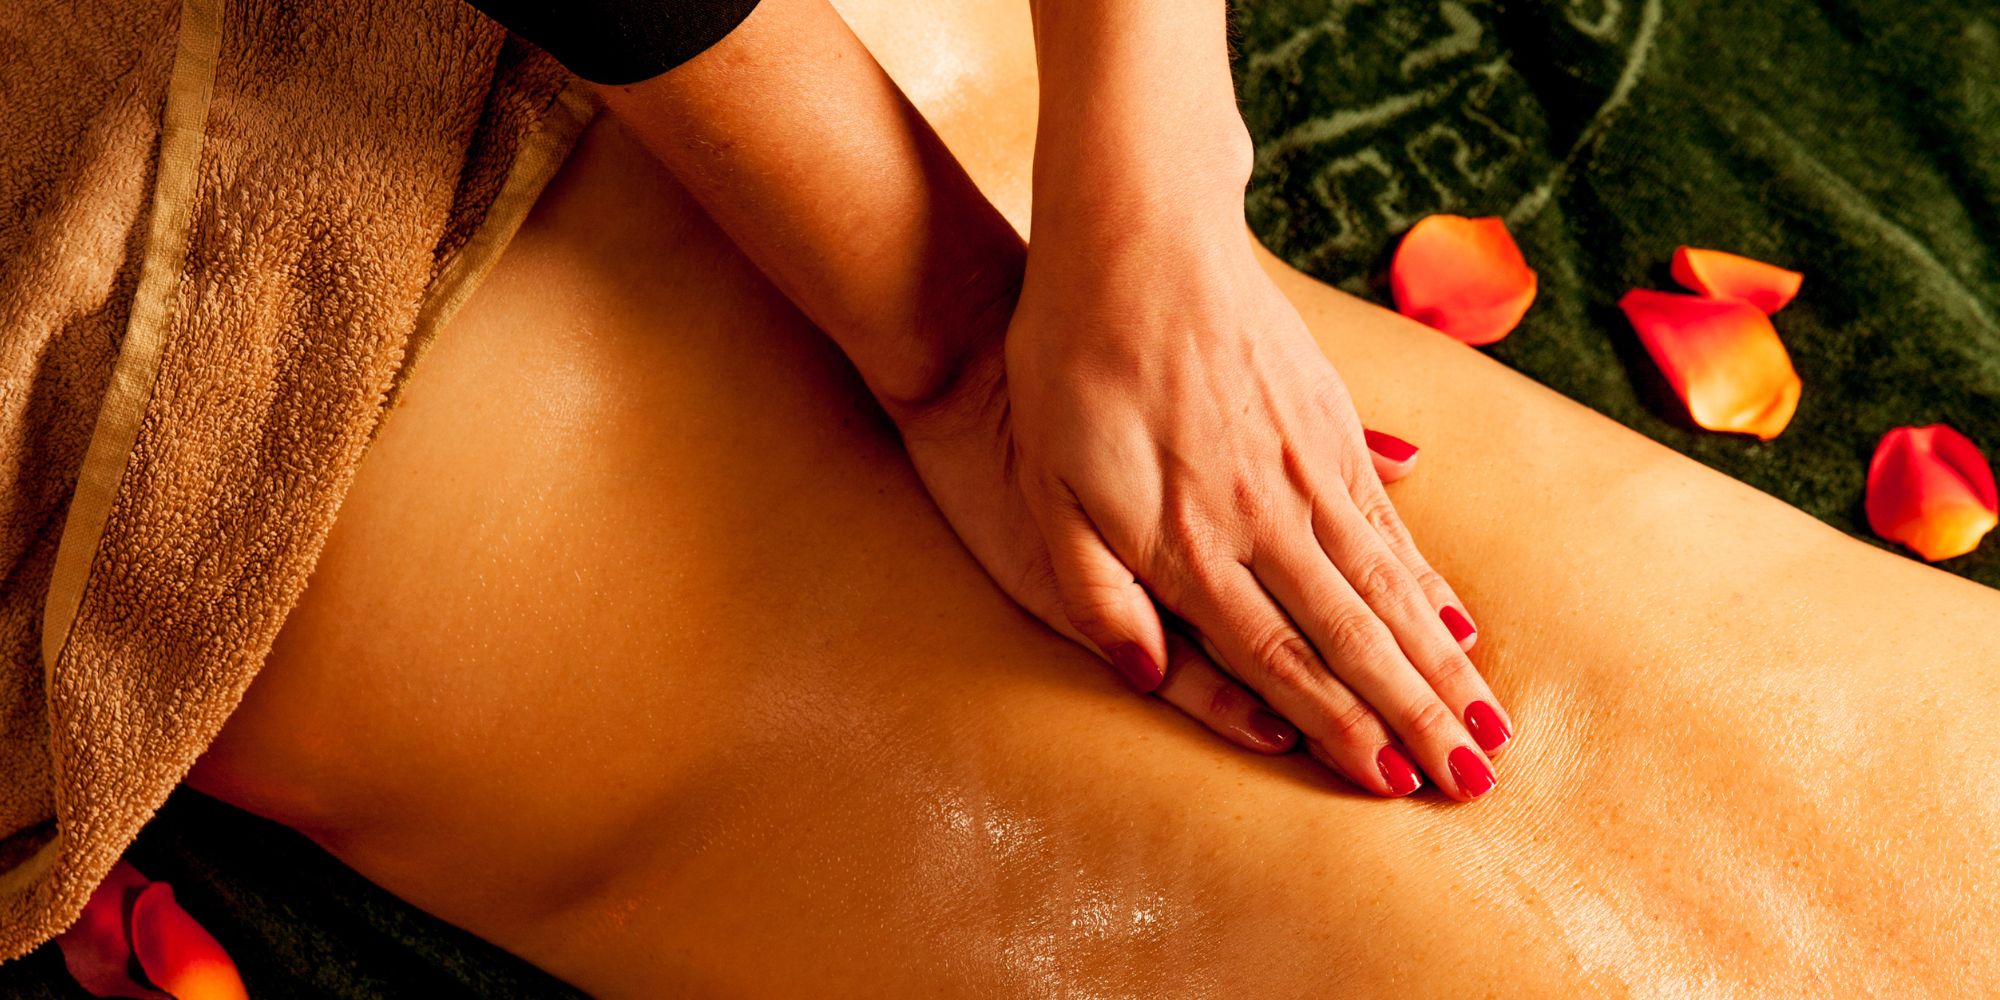 Τεχνικές Θεραπευτικού Μασάζ Μέσης-Massagepoint